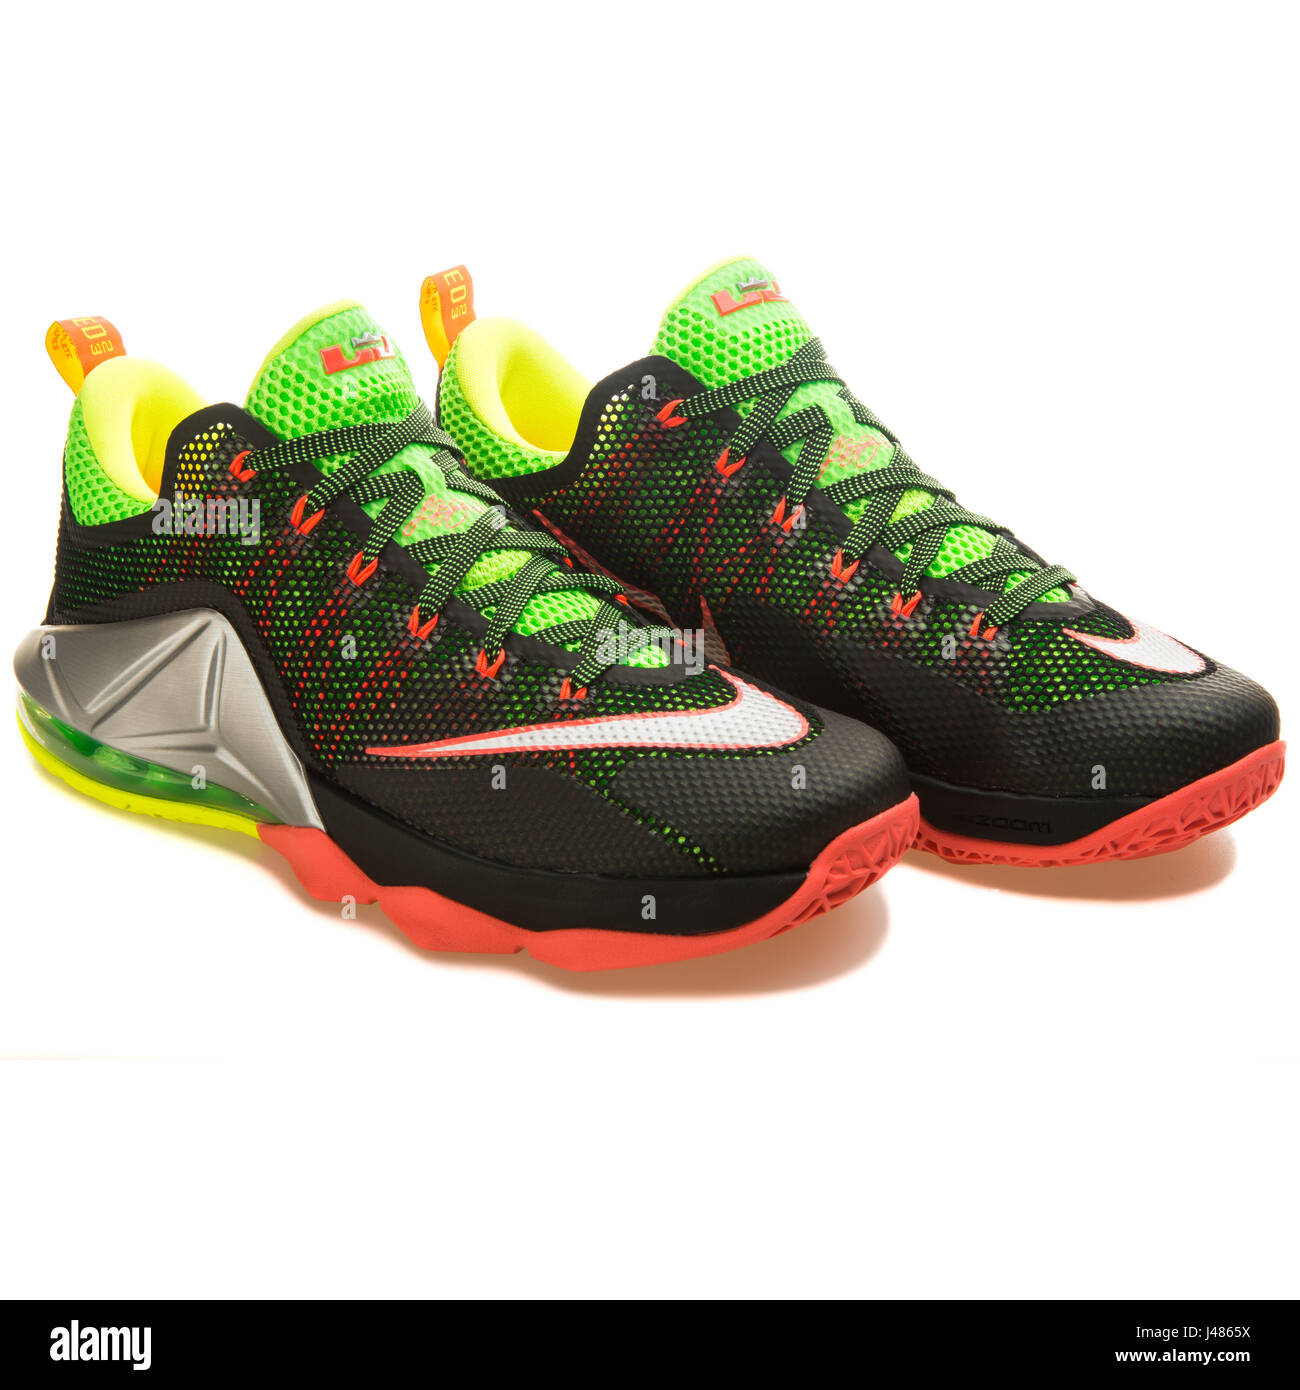 Nike LeBron XII Low - 724557-003 Stock Photo - Alamy